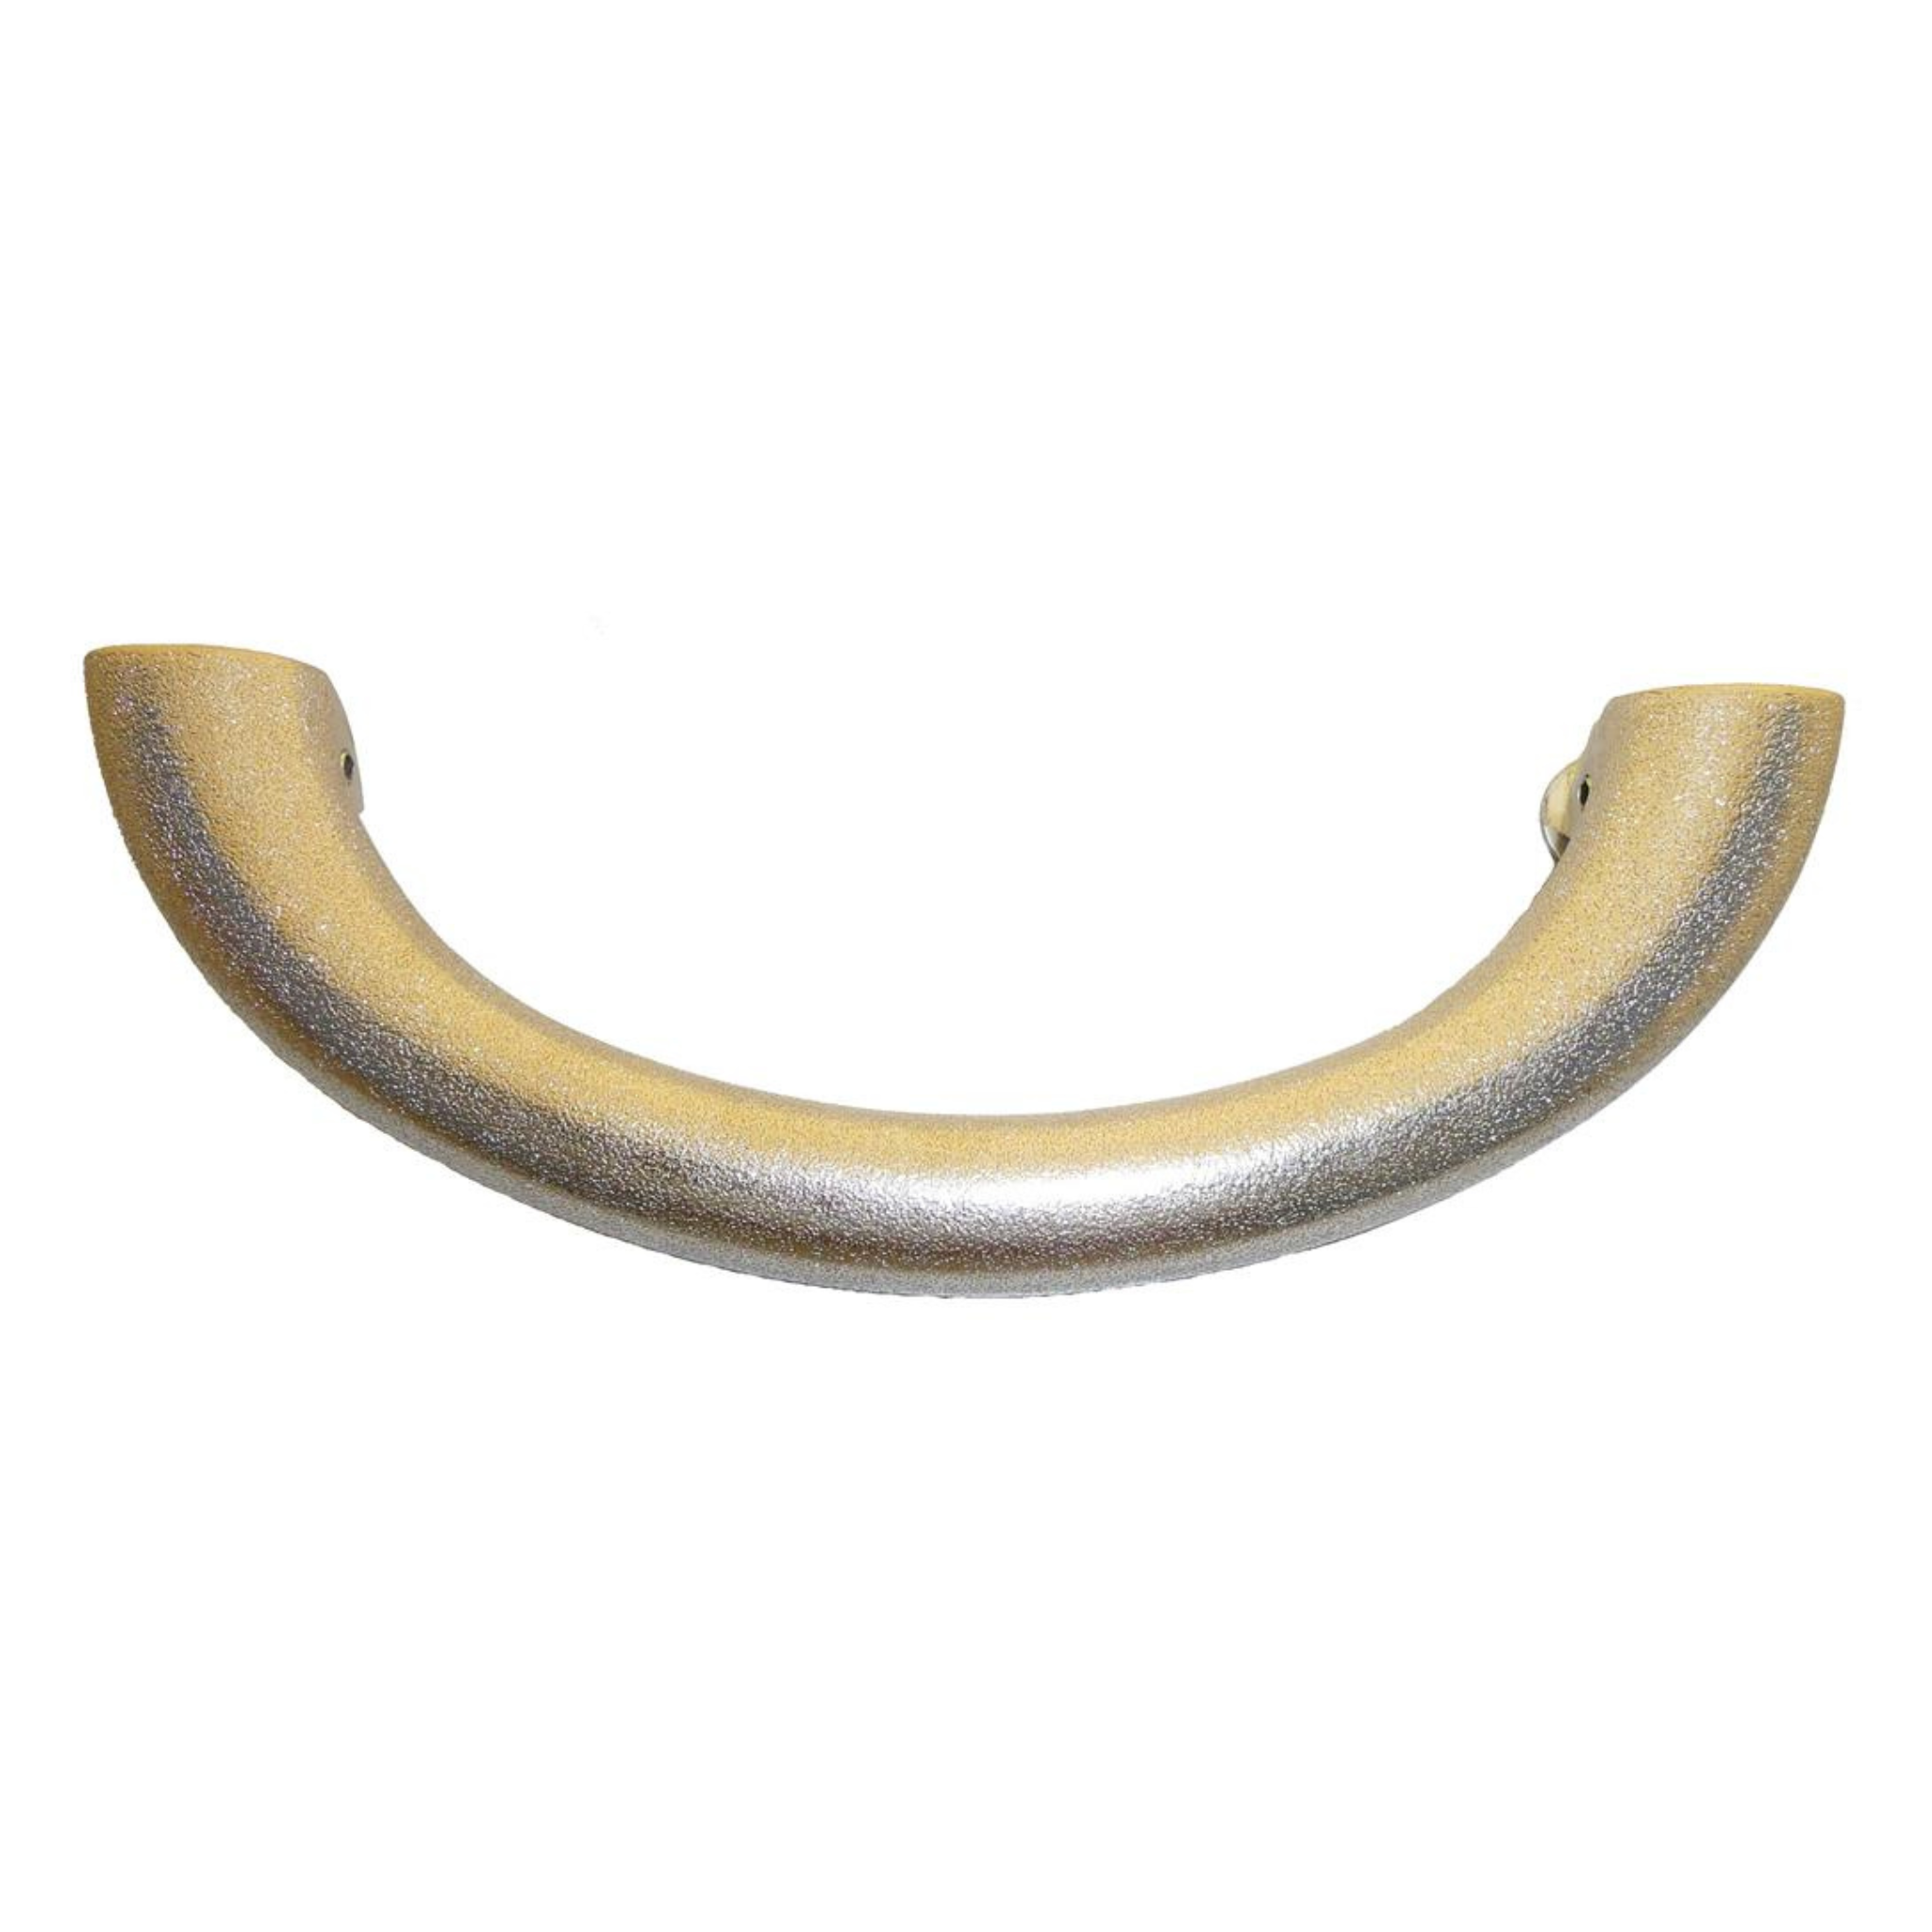 Spalt handle set with accessories fine zinc casting set of 6